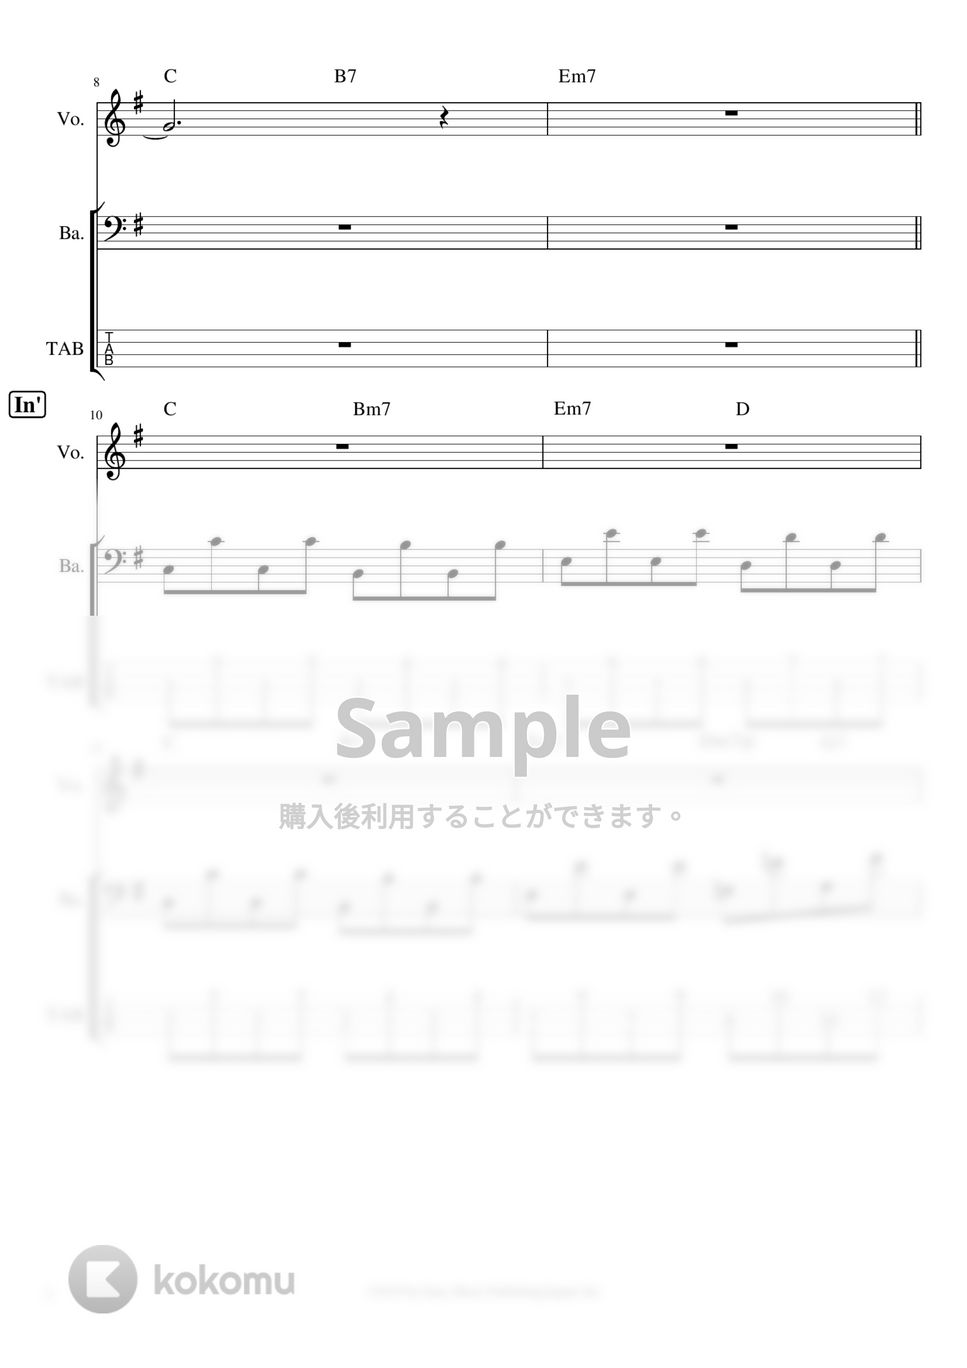 YOASOBI - 夜に駆ける　ベースタブ譜※男声アレンジ (男声キーに編曲したベースタブ譜です。) by ましまし